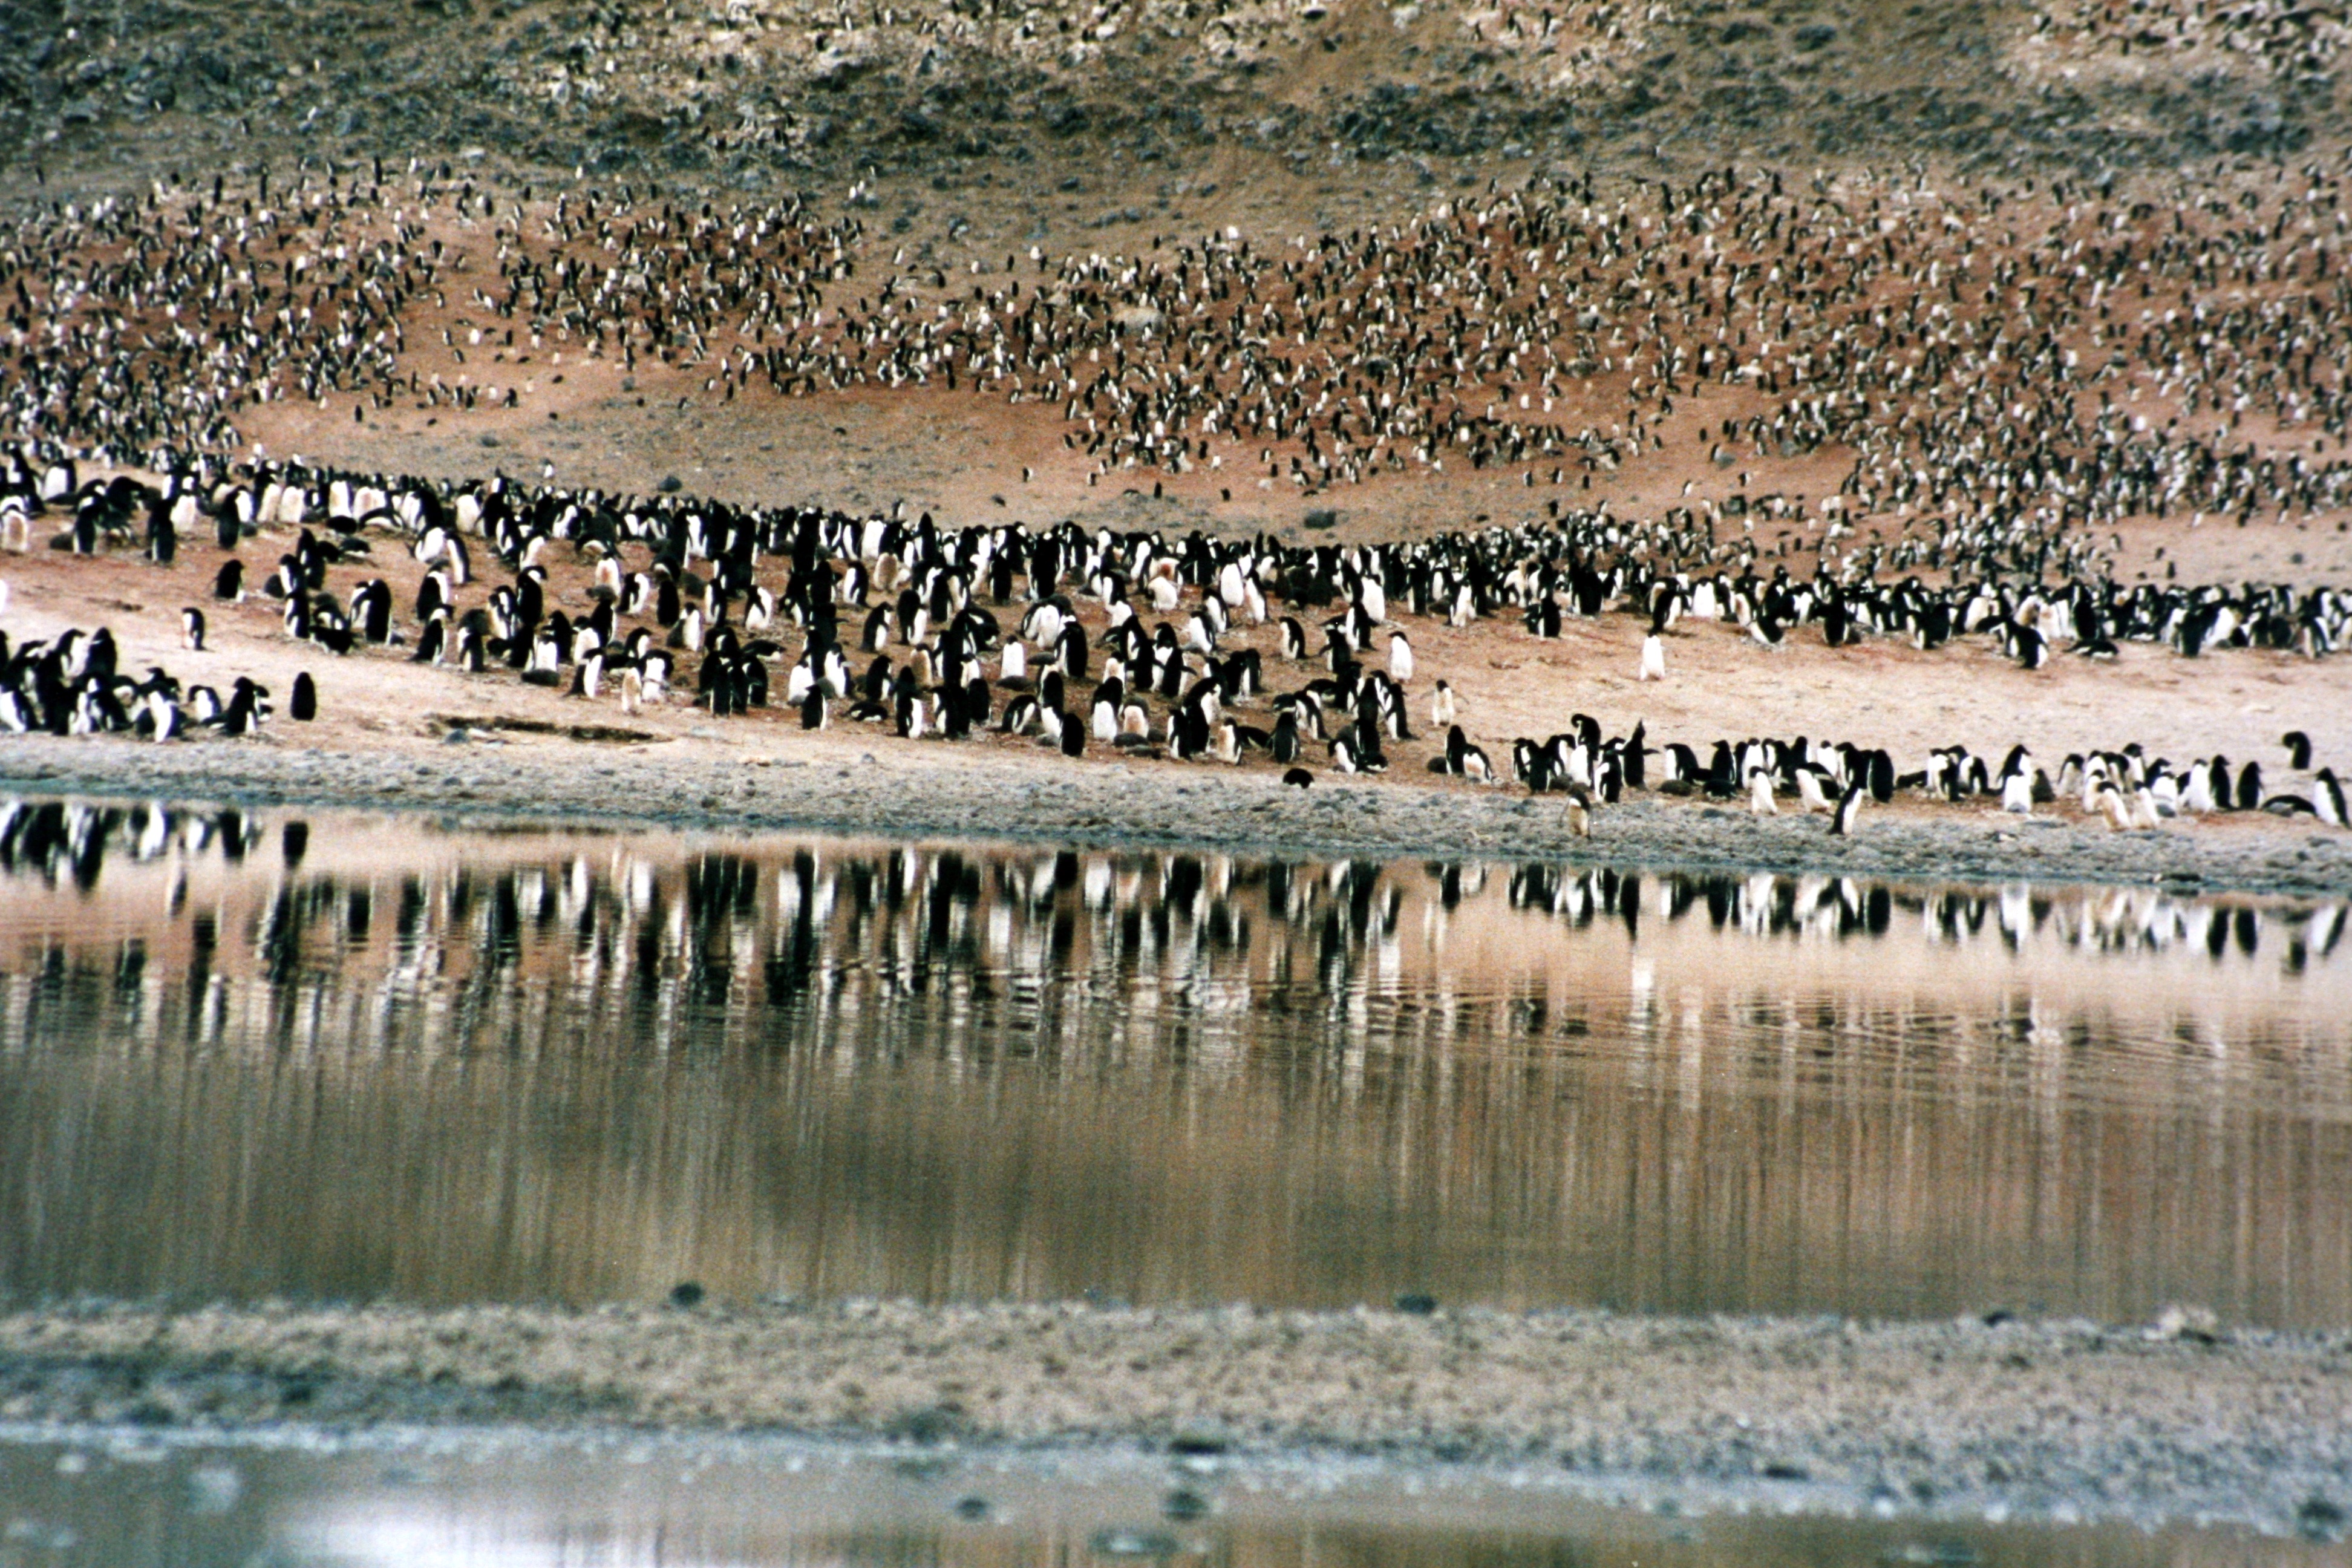 Pingüinos Adelie en el cabo Adare en el mar de Ross, Antártida. Muchos pingüinos están dispersos sobre el suelo y las rocas junto a un cuerpo de agua.